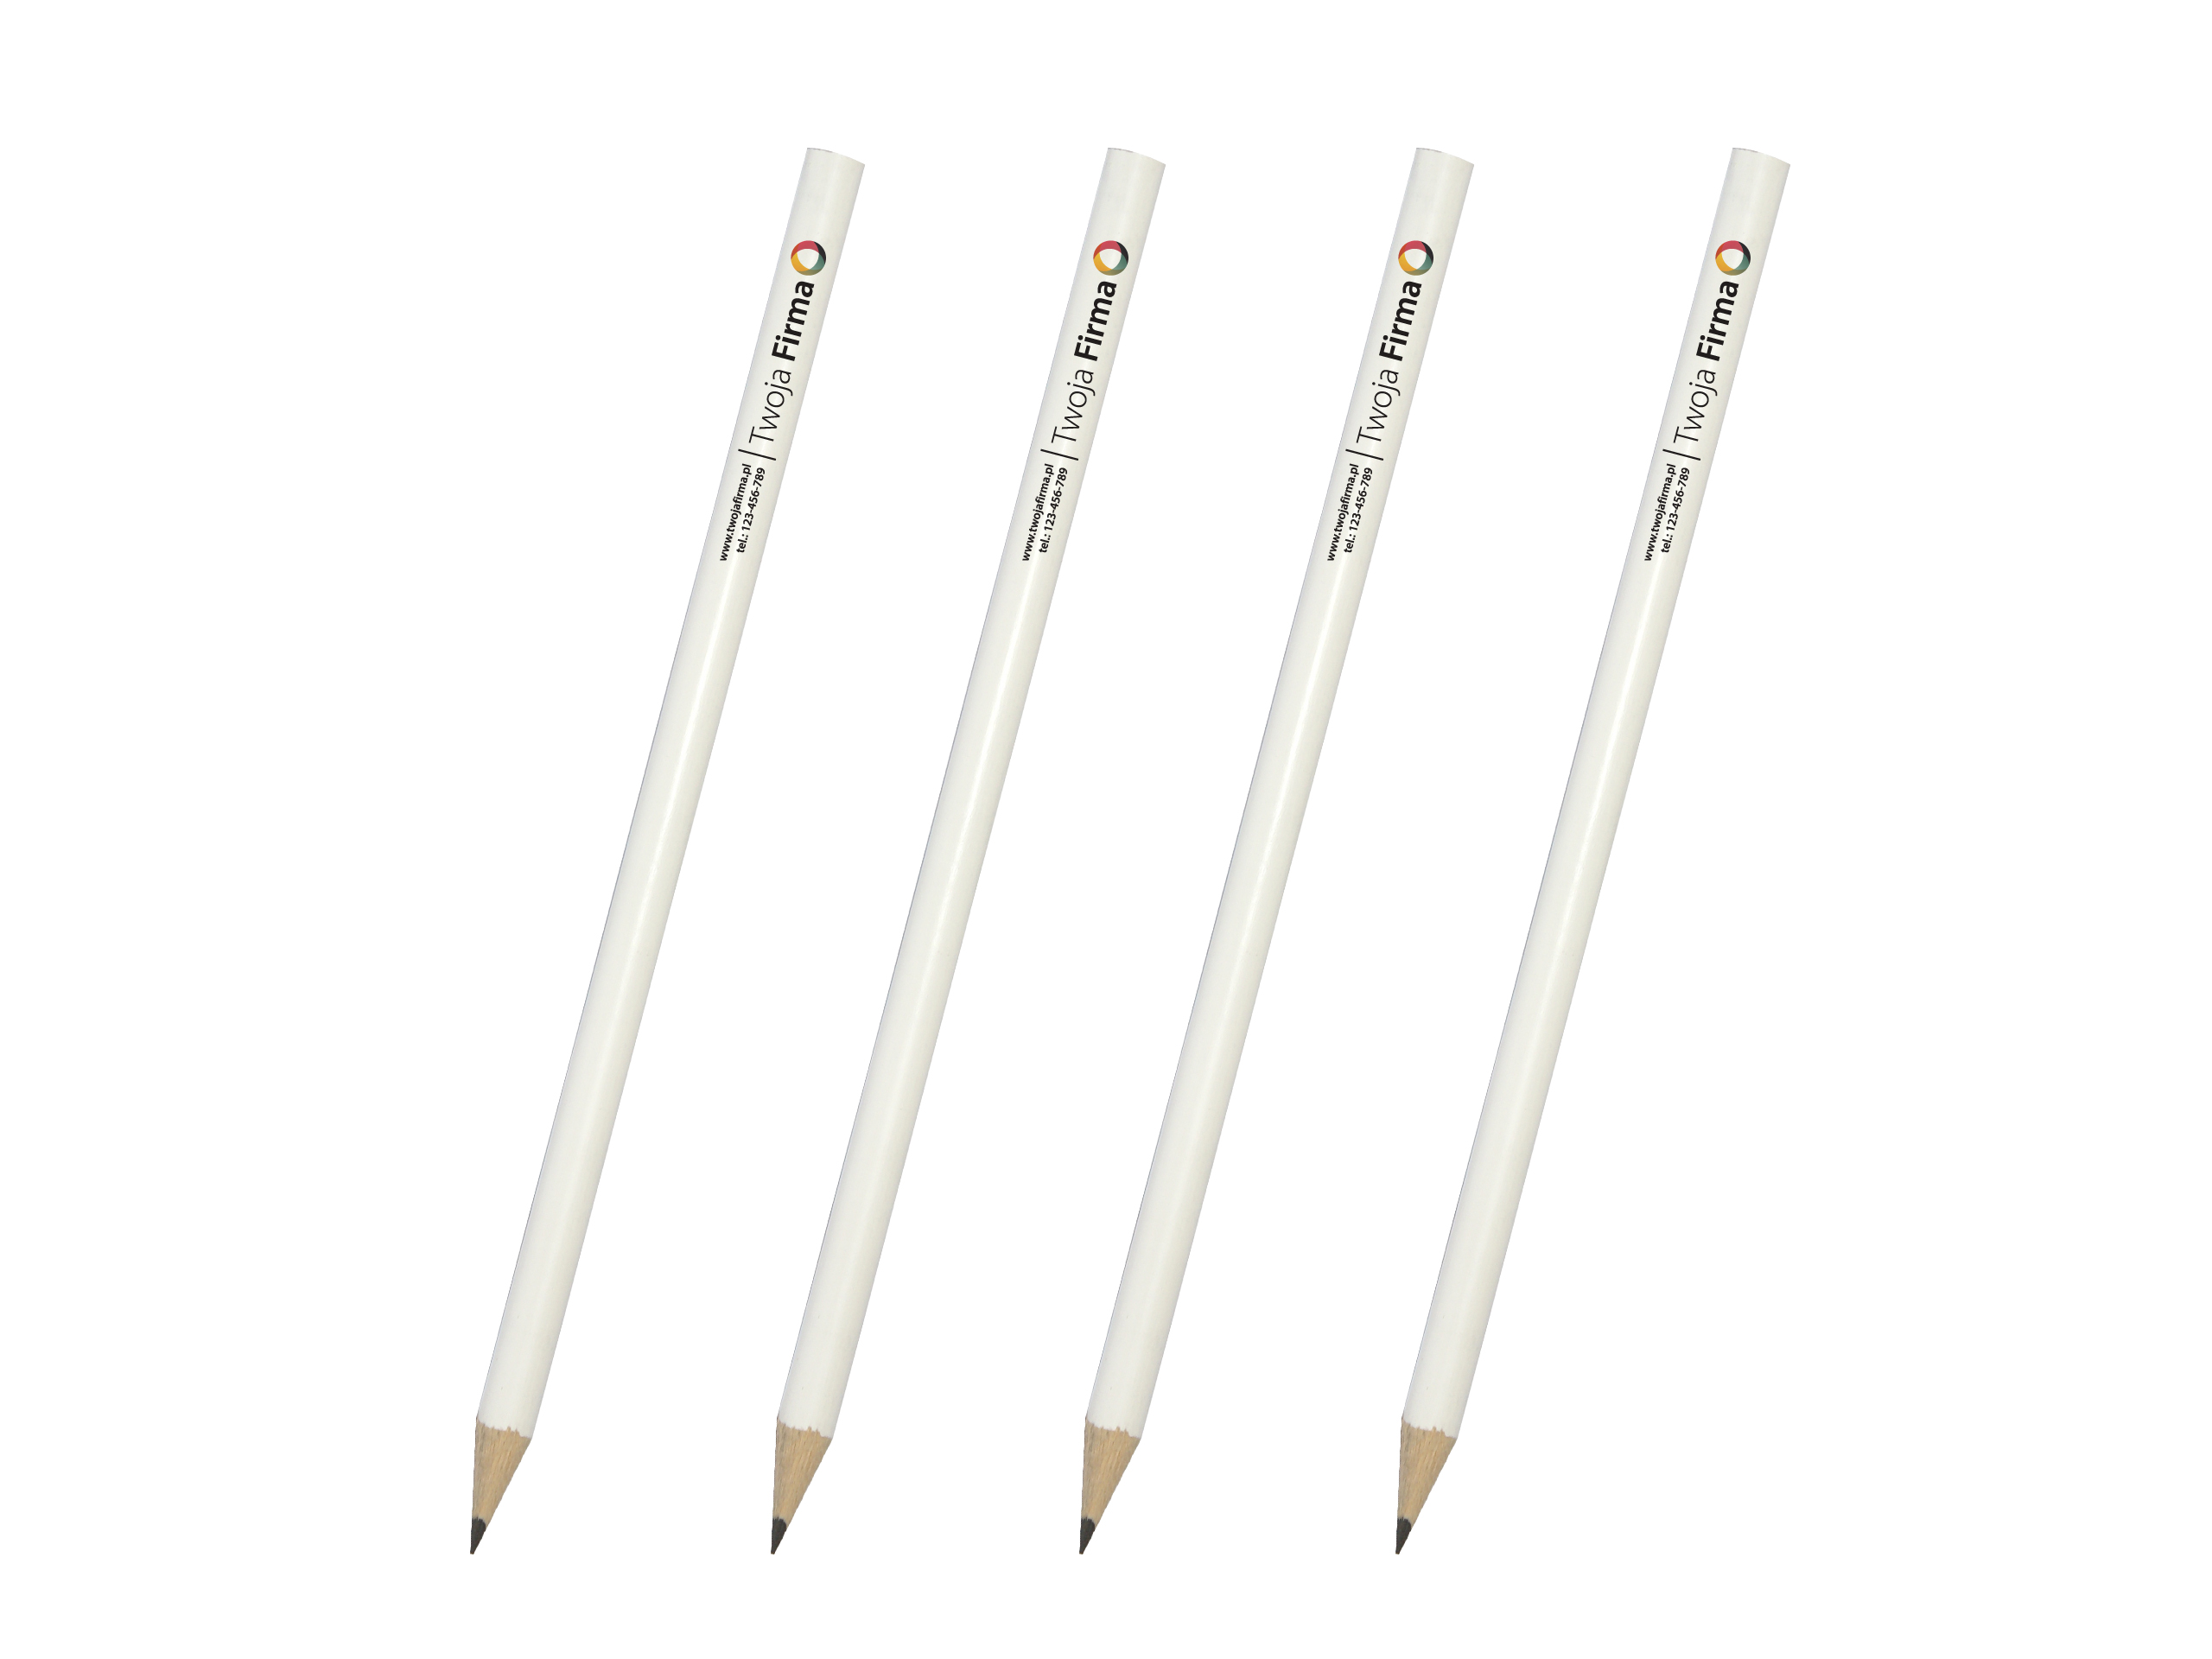 Biele ceruzky s vlastným tlačovým logom - plná farba